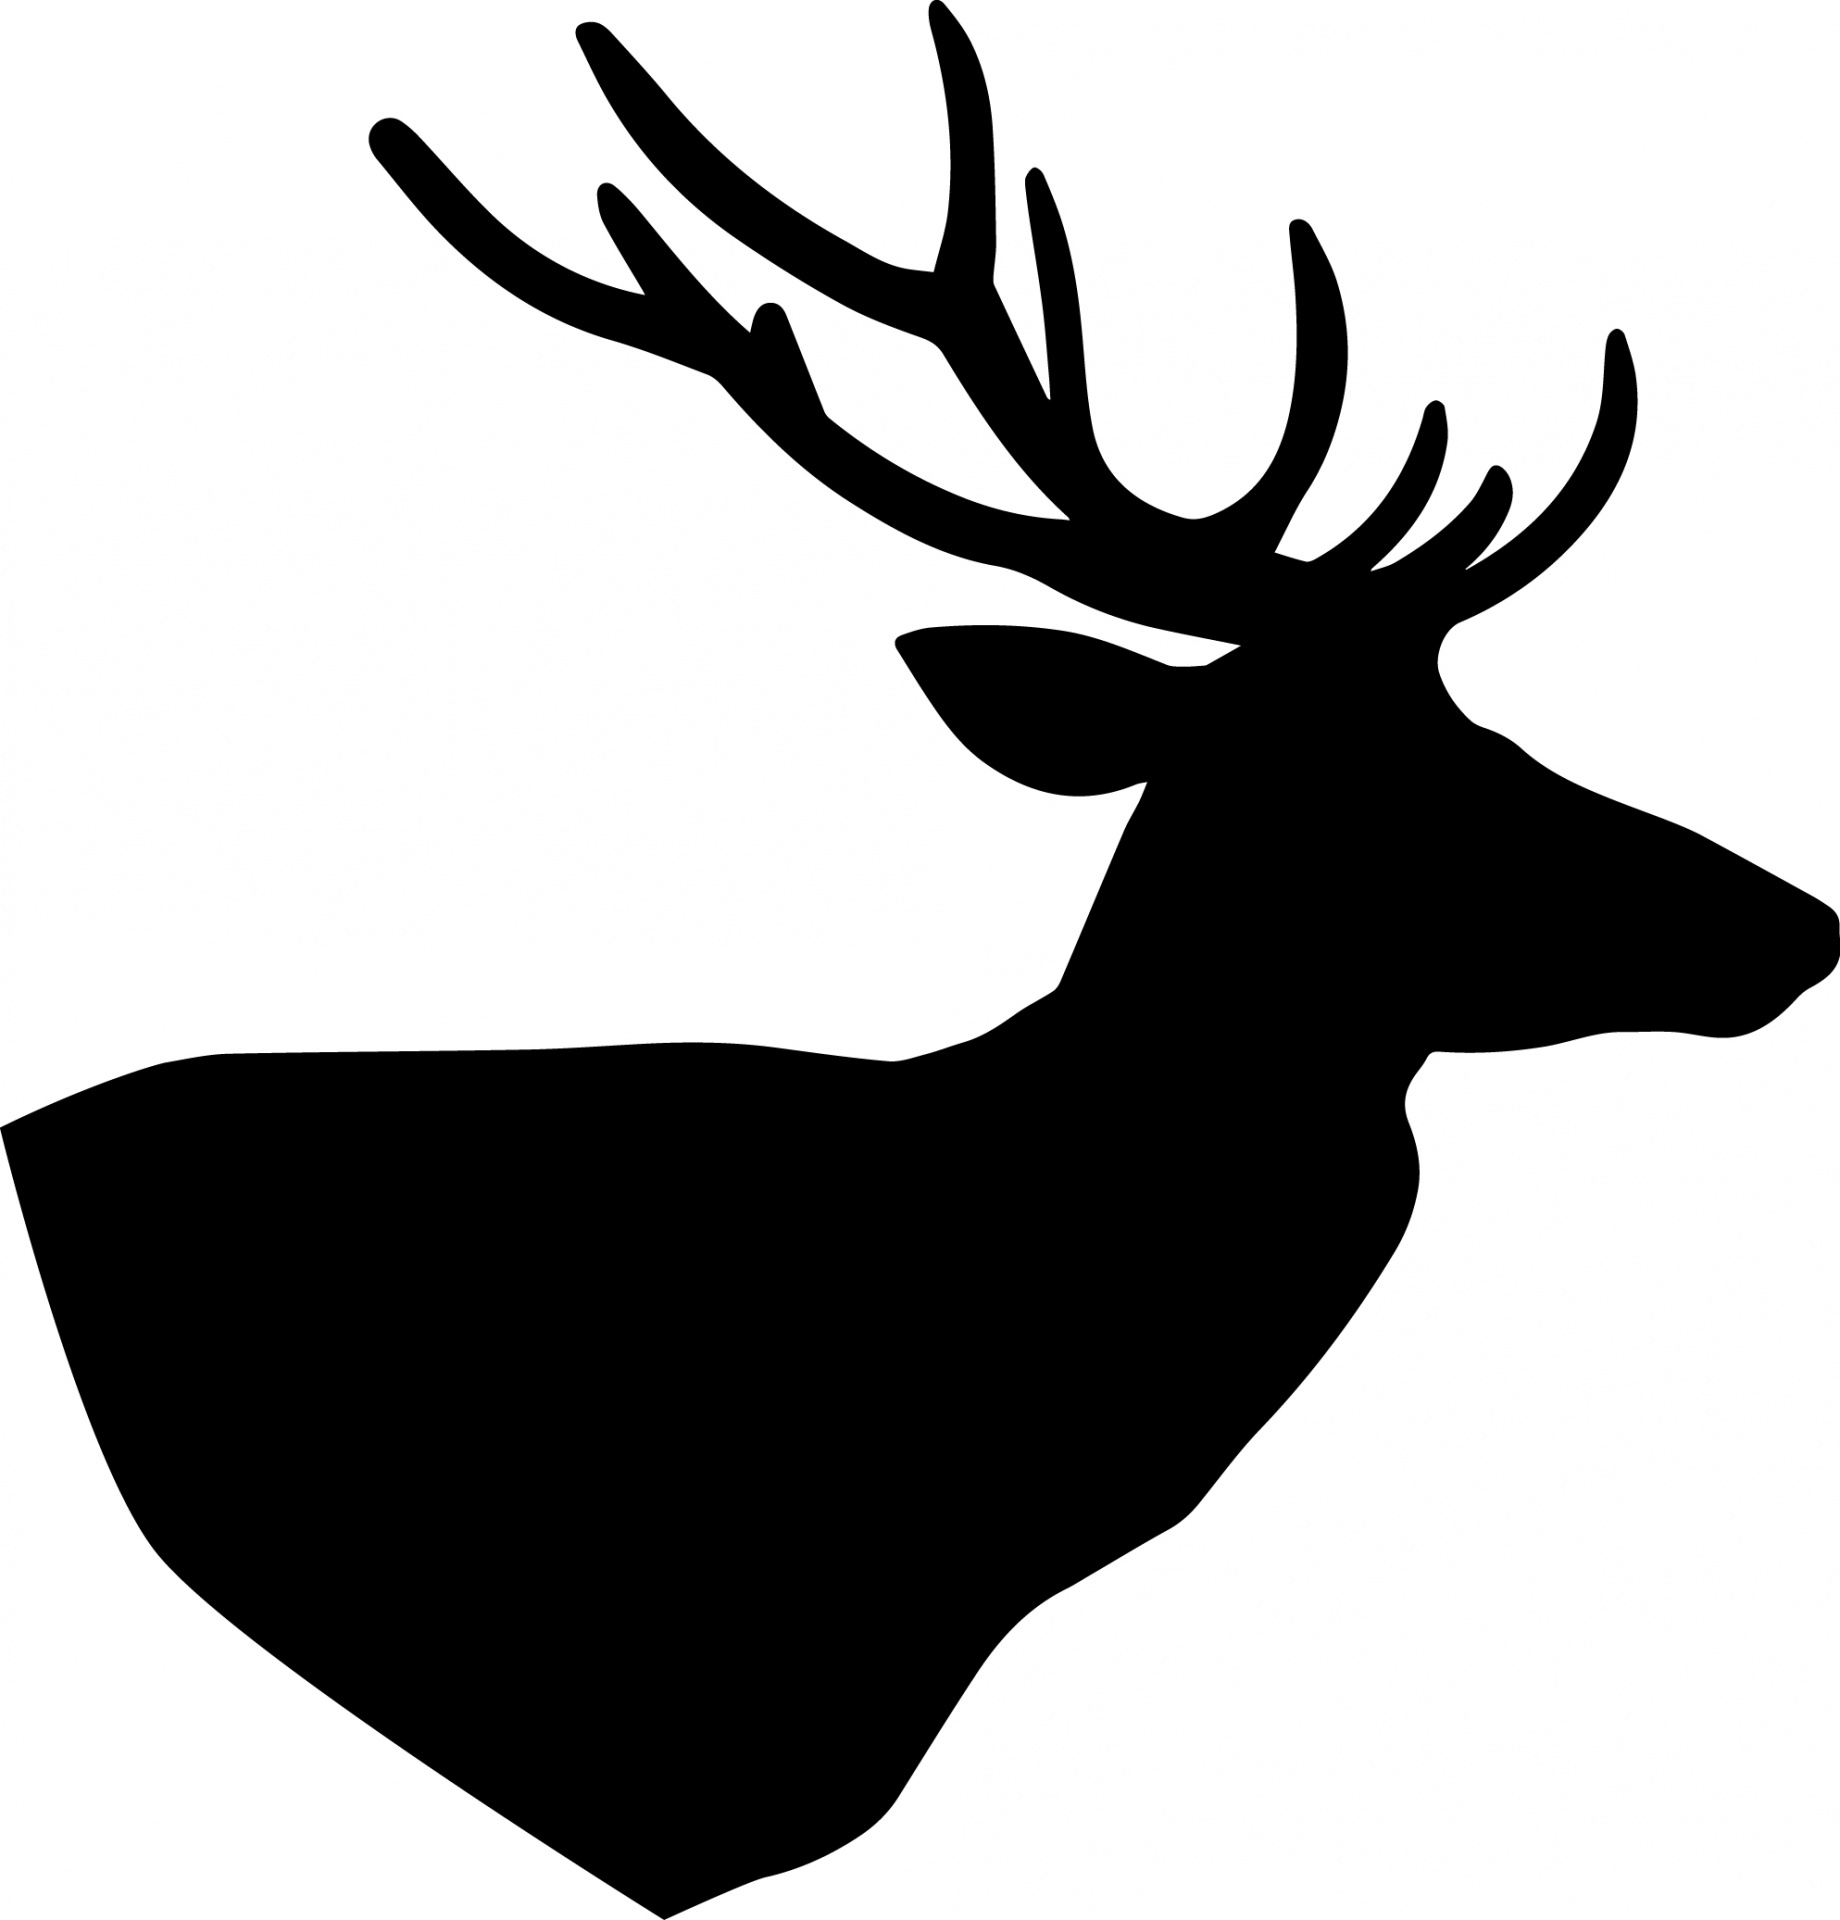 deer deer silhouette silhouette free photo